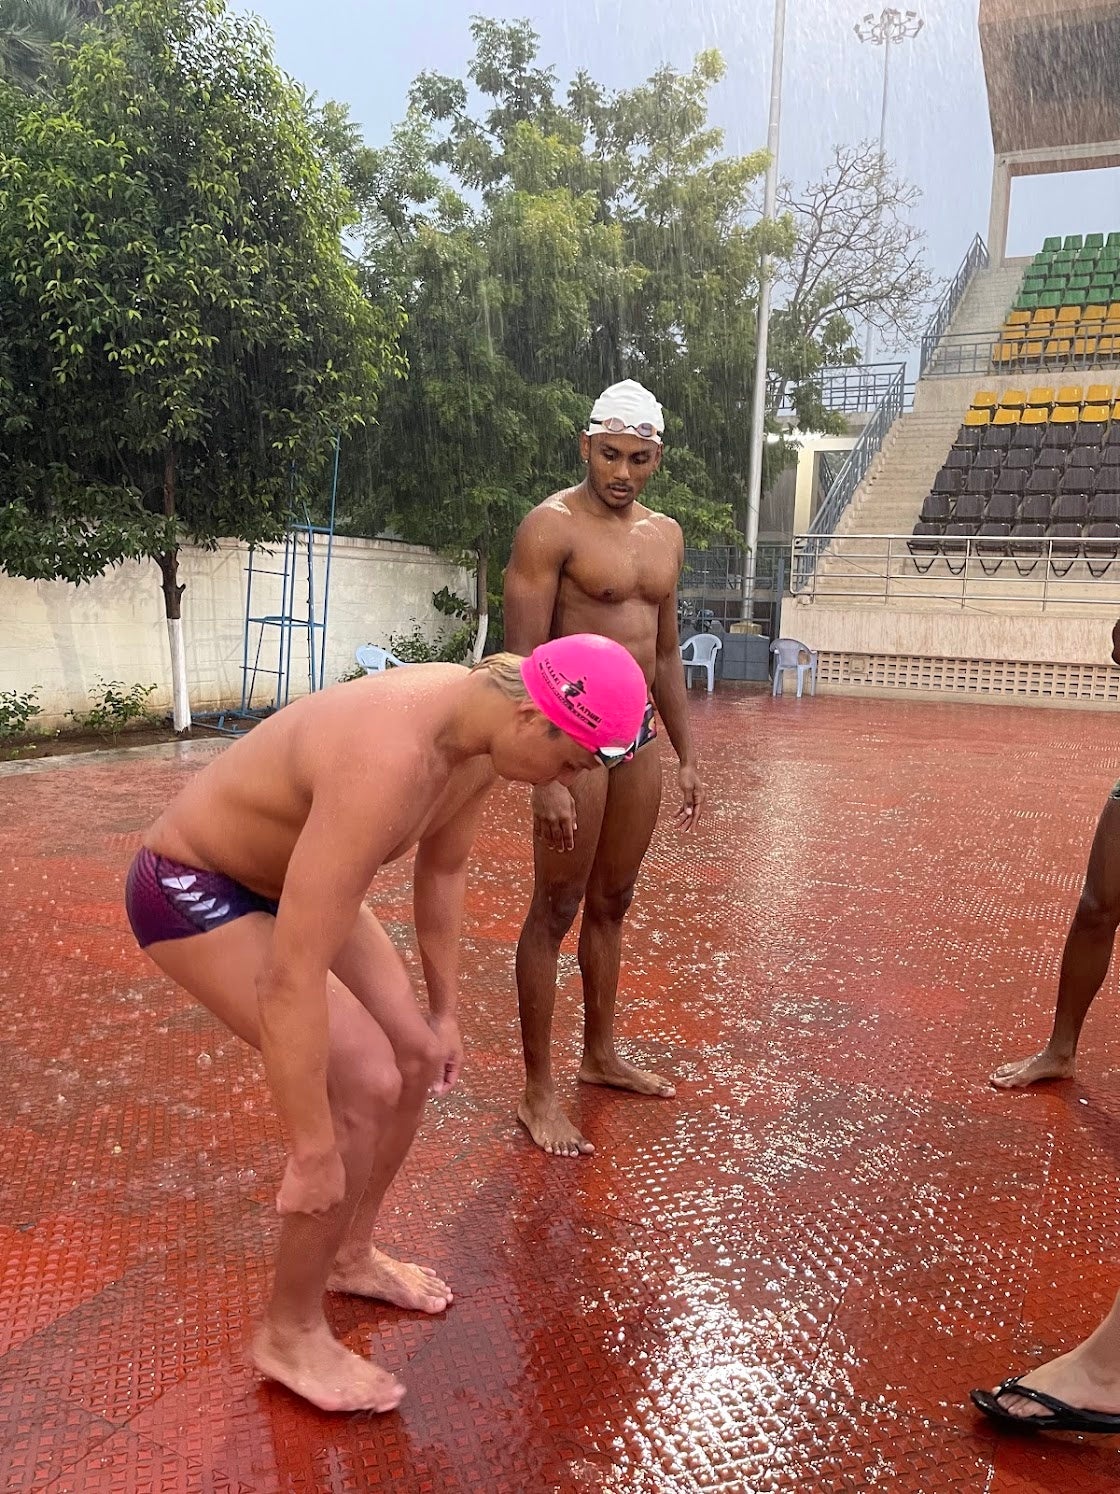 日本の競泳選手によるスイムクリニックがインドで開催されました。